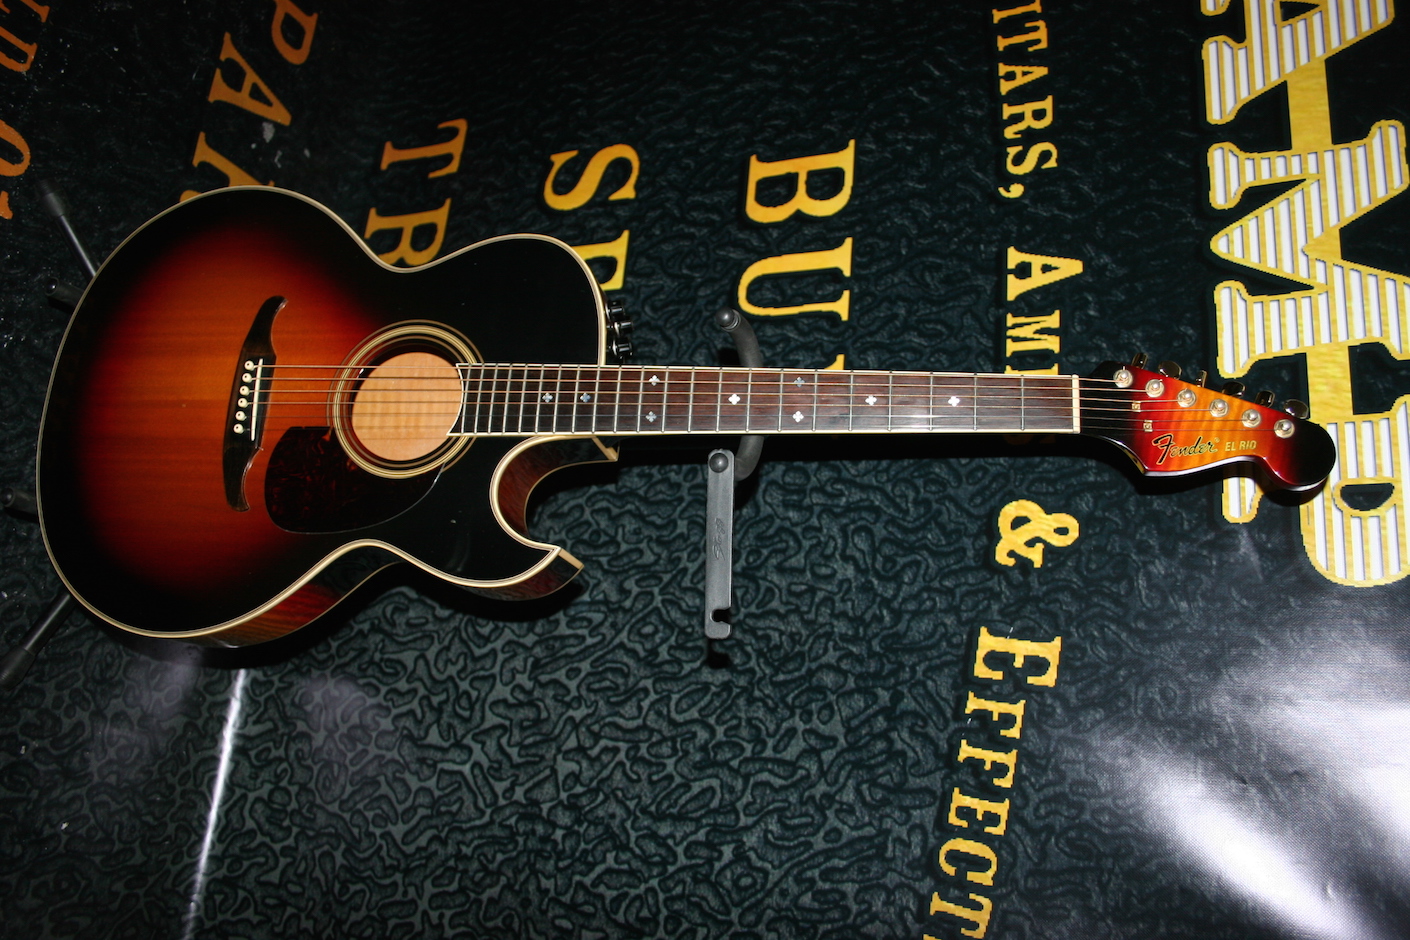 100%正規品 アコースティックギター Fender EL RIO アコースティックギター - raffles.mn